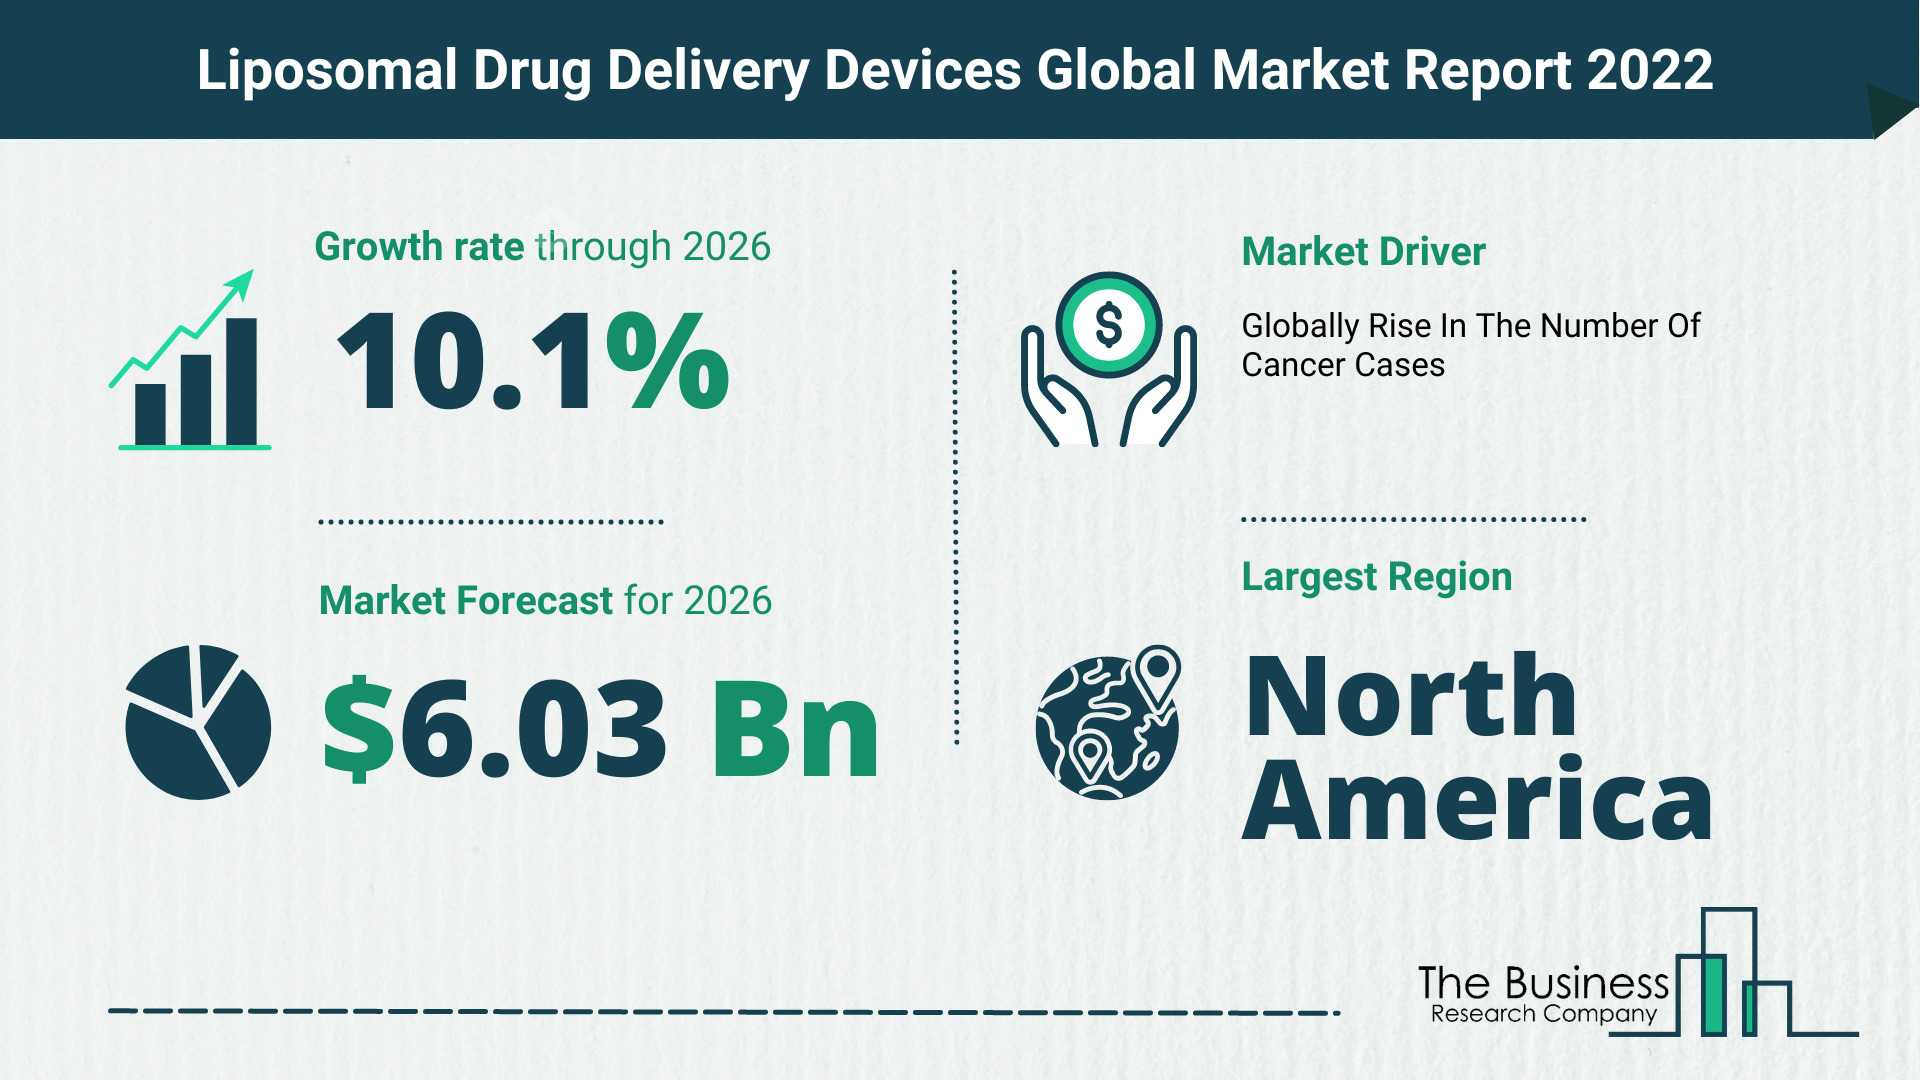 Global Liposomal Drug Delivery Devices Market Size